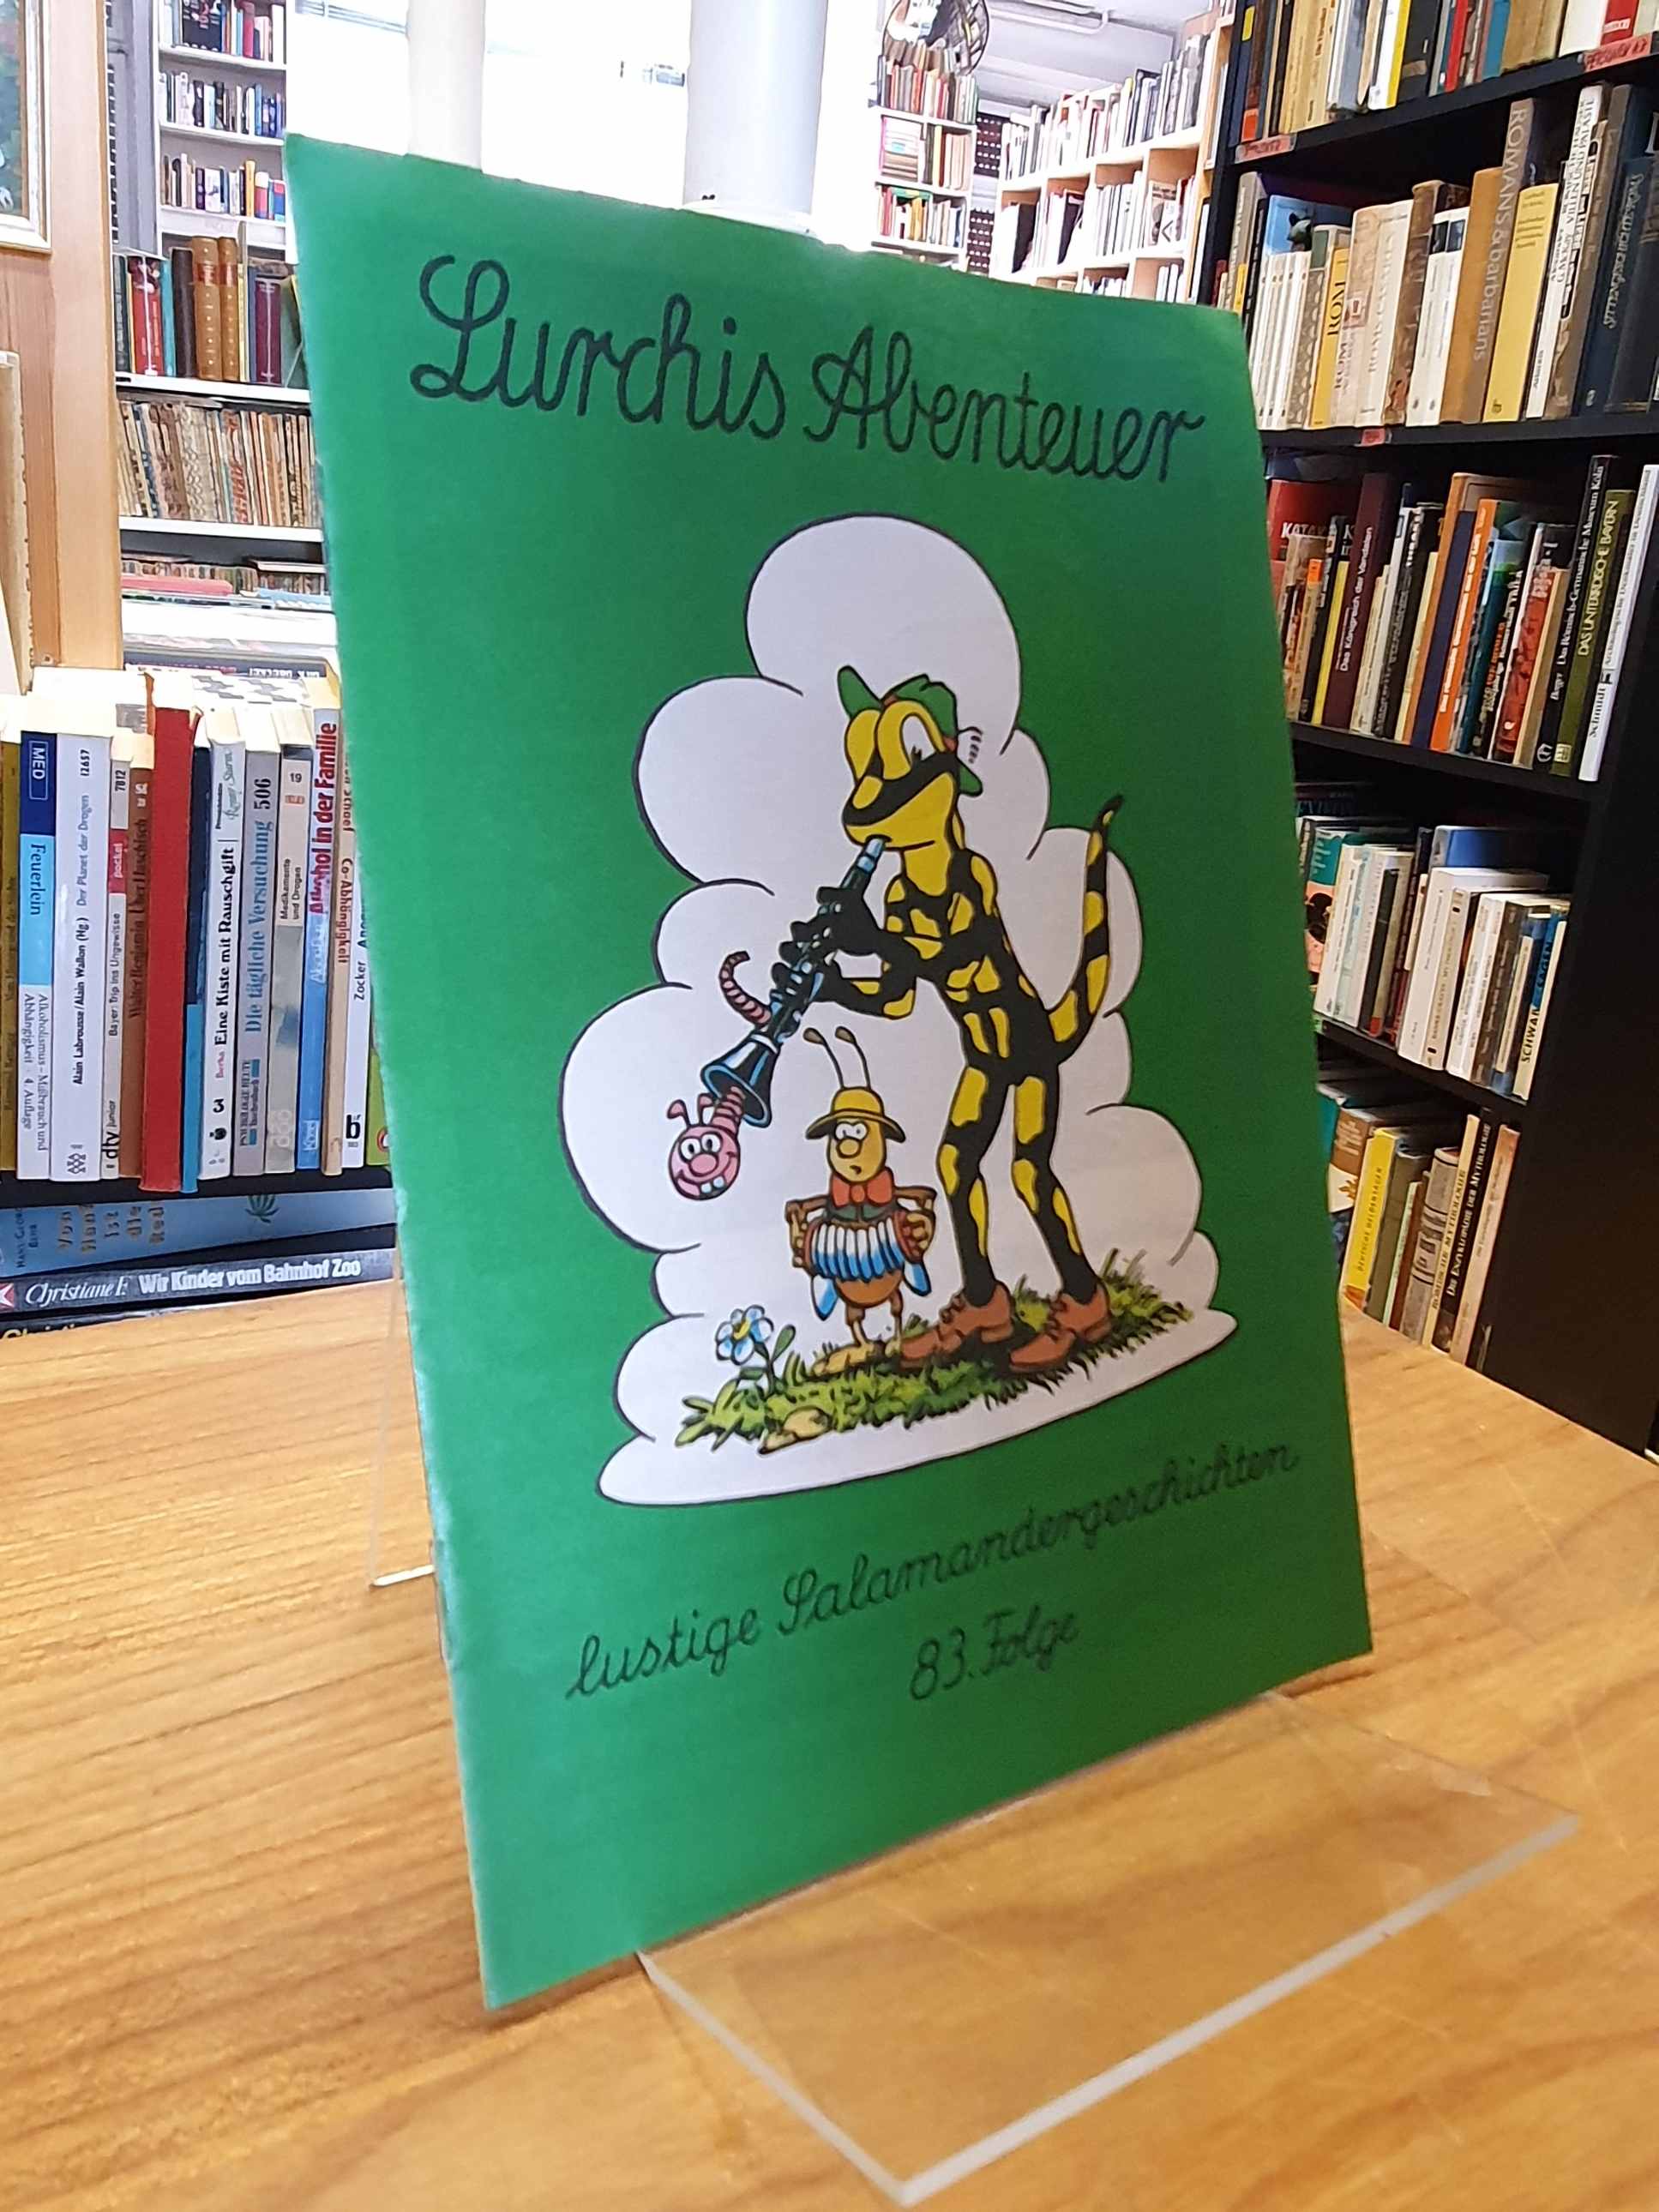 Salamander AG (Hrsg.), Lurchis Abenteuer – Lustige Salamandergeschichten, 83. Fo